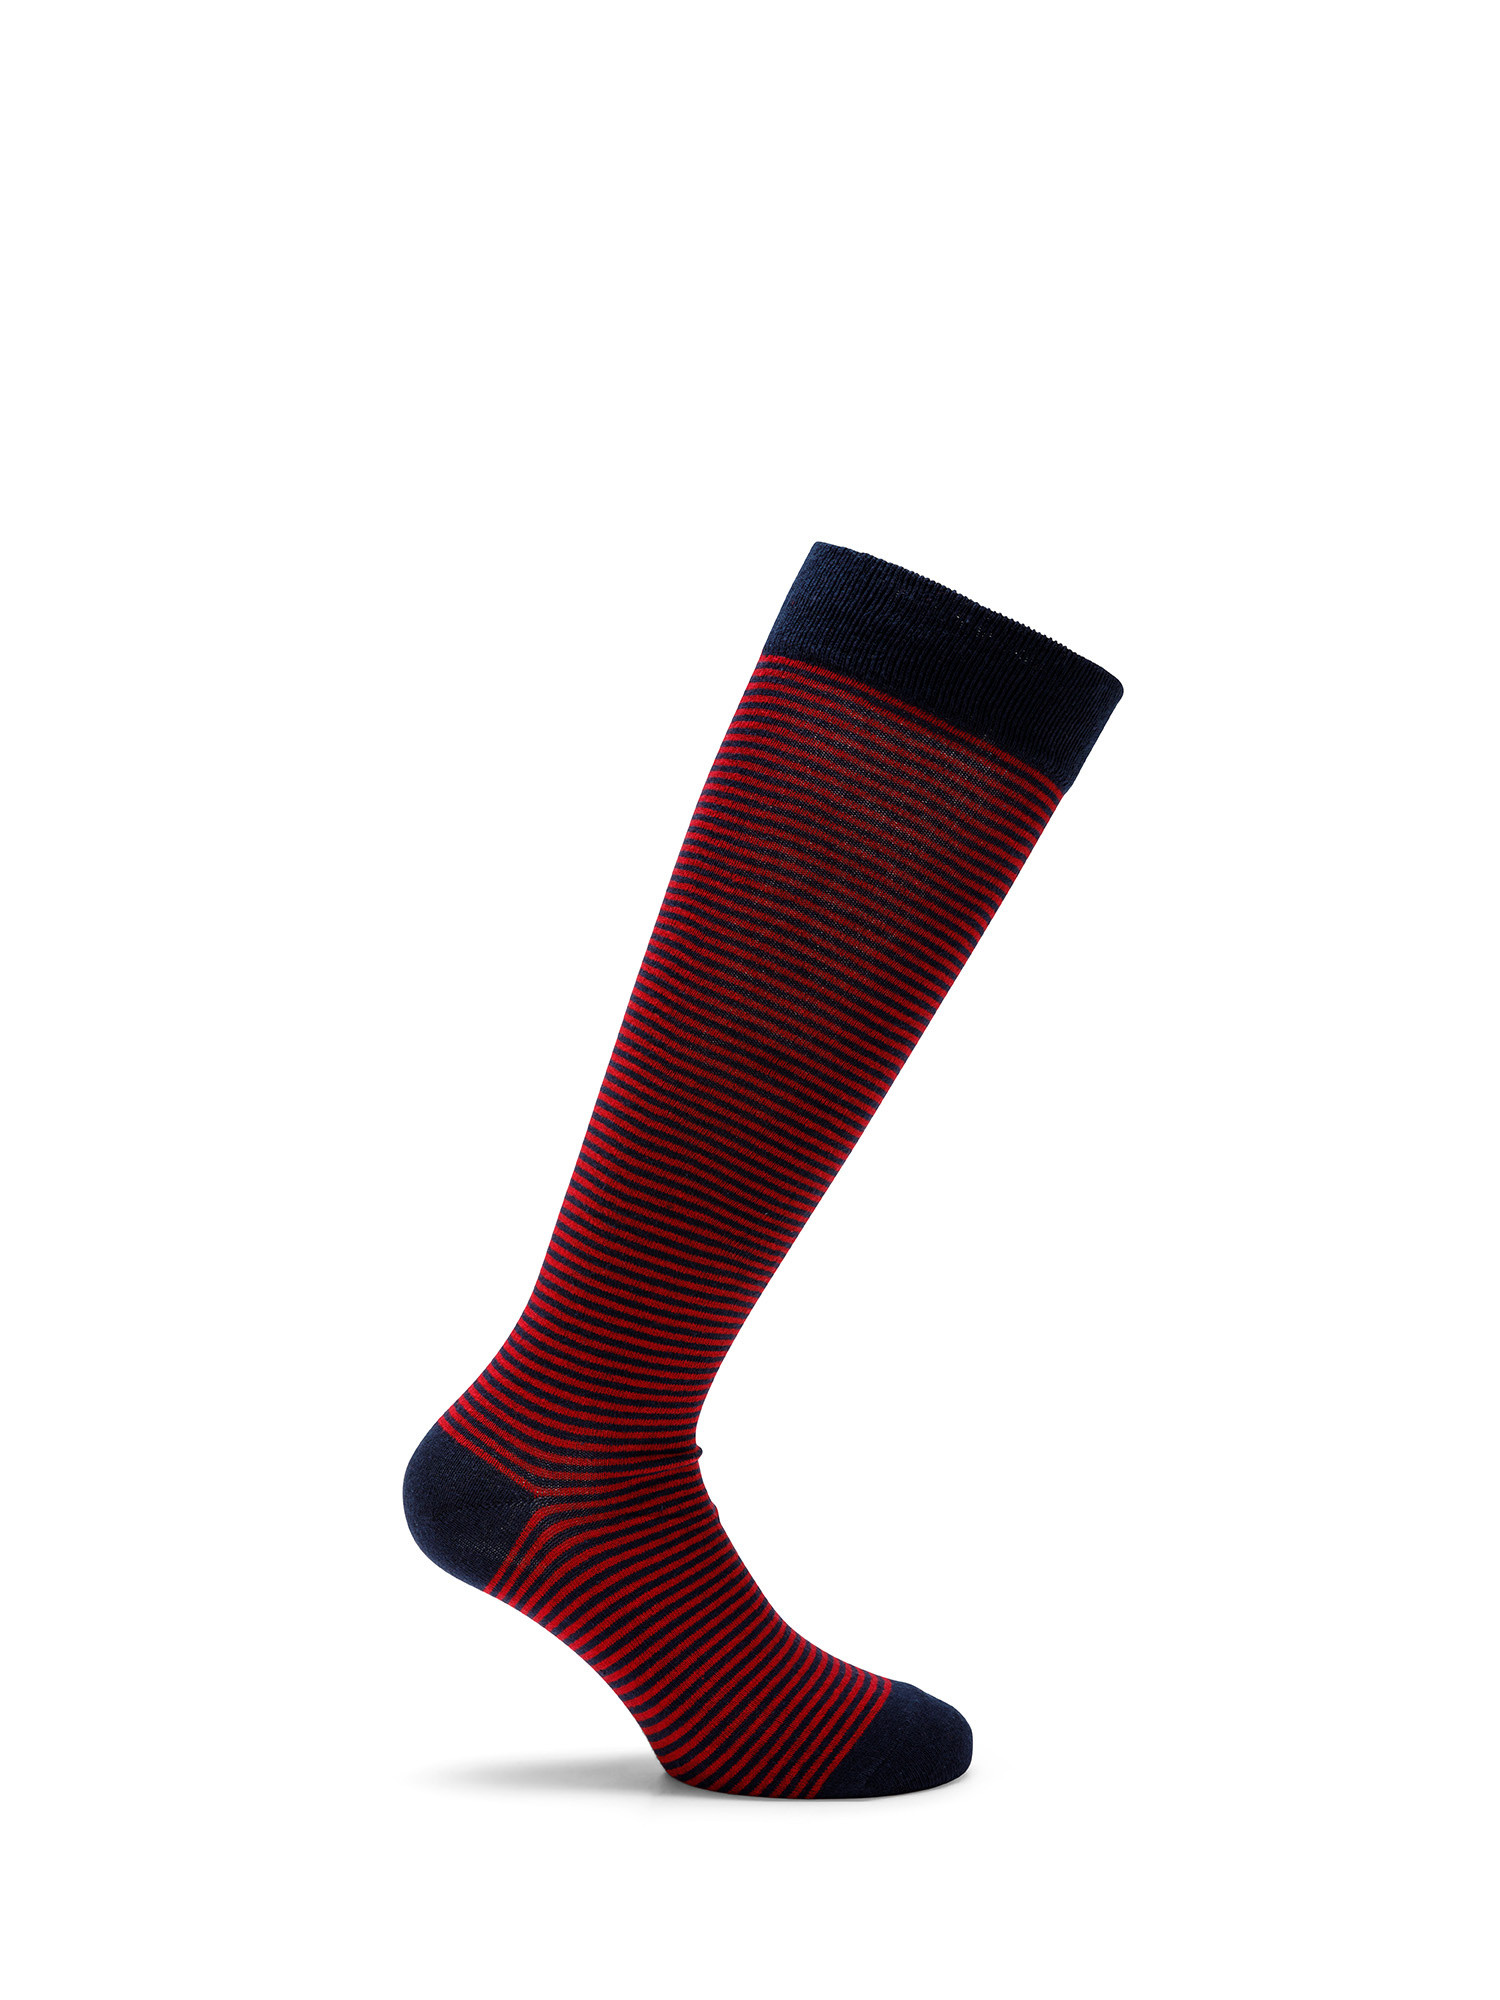 Luca D'Altieri - Set of 3 patterned long socks, Blue, large image number 3